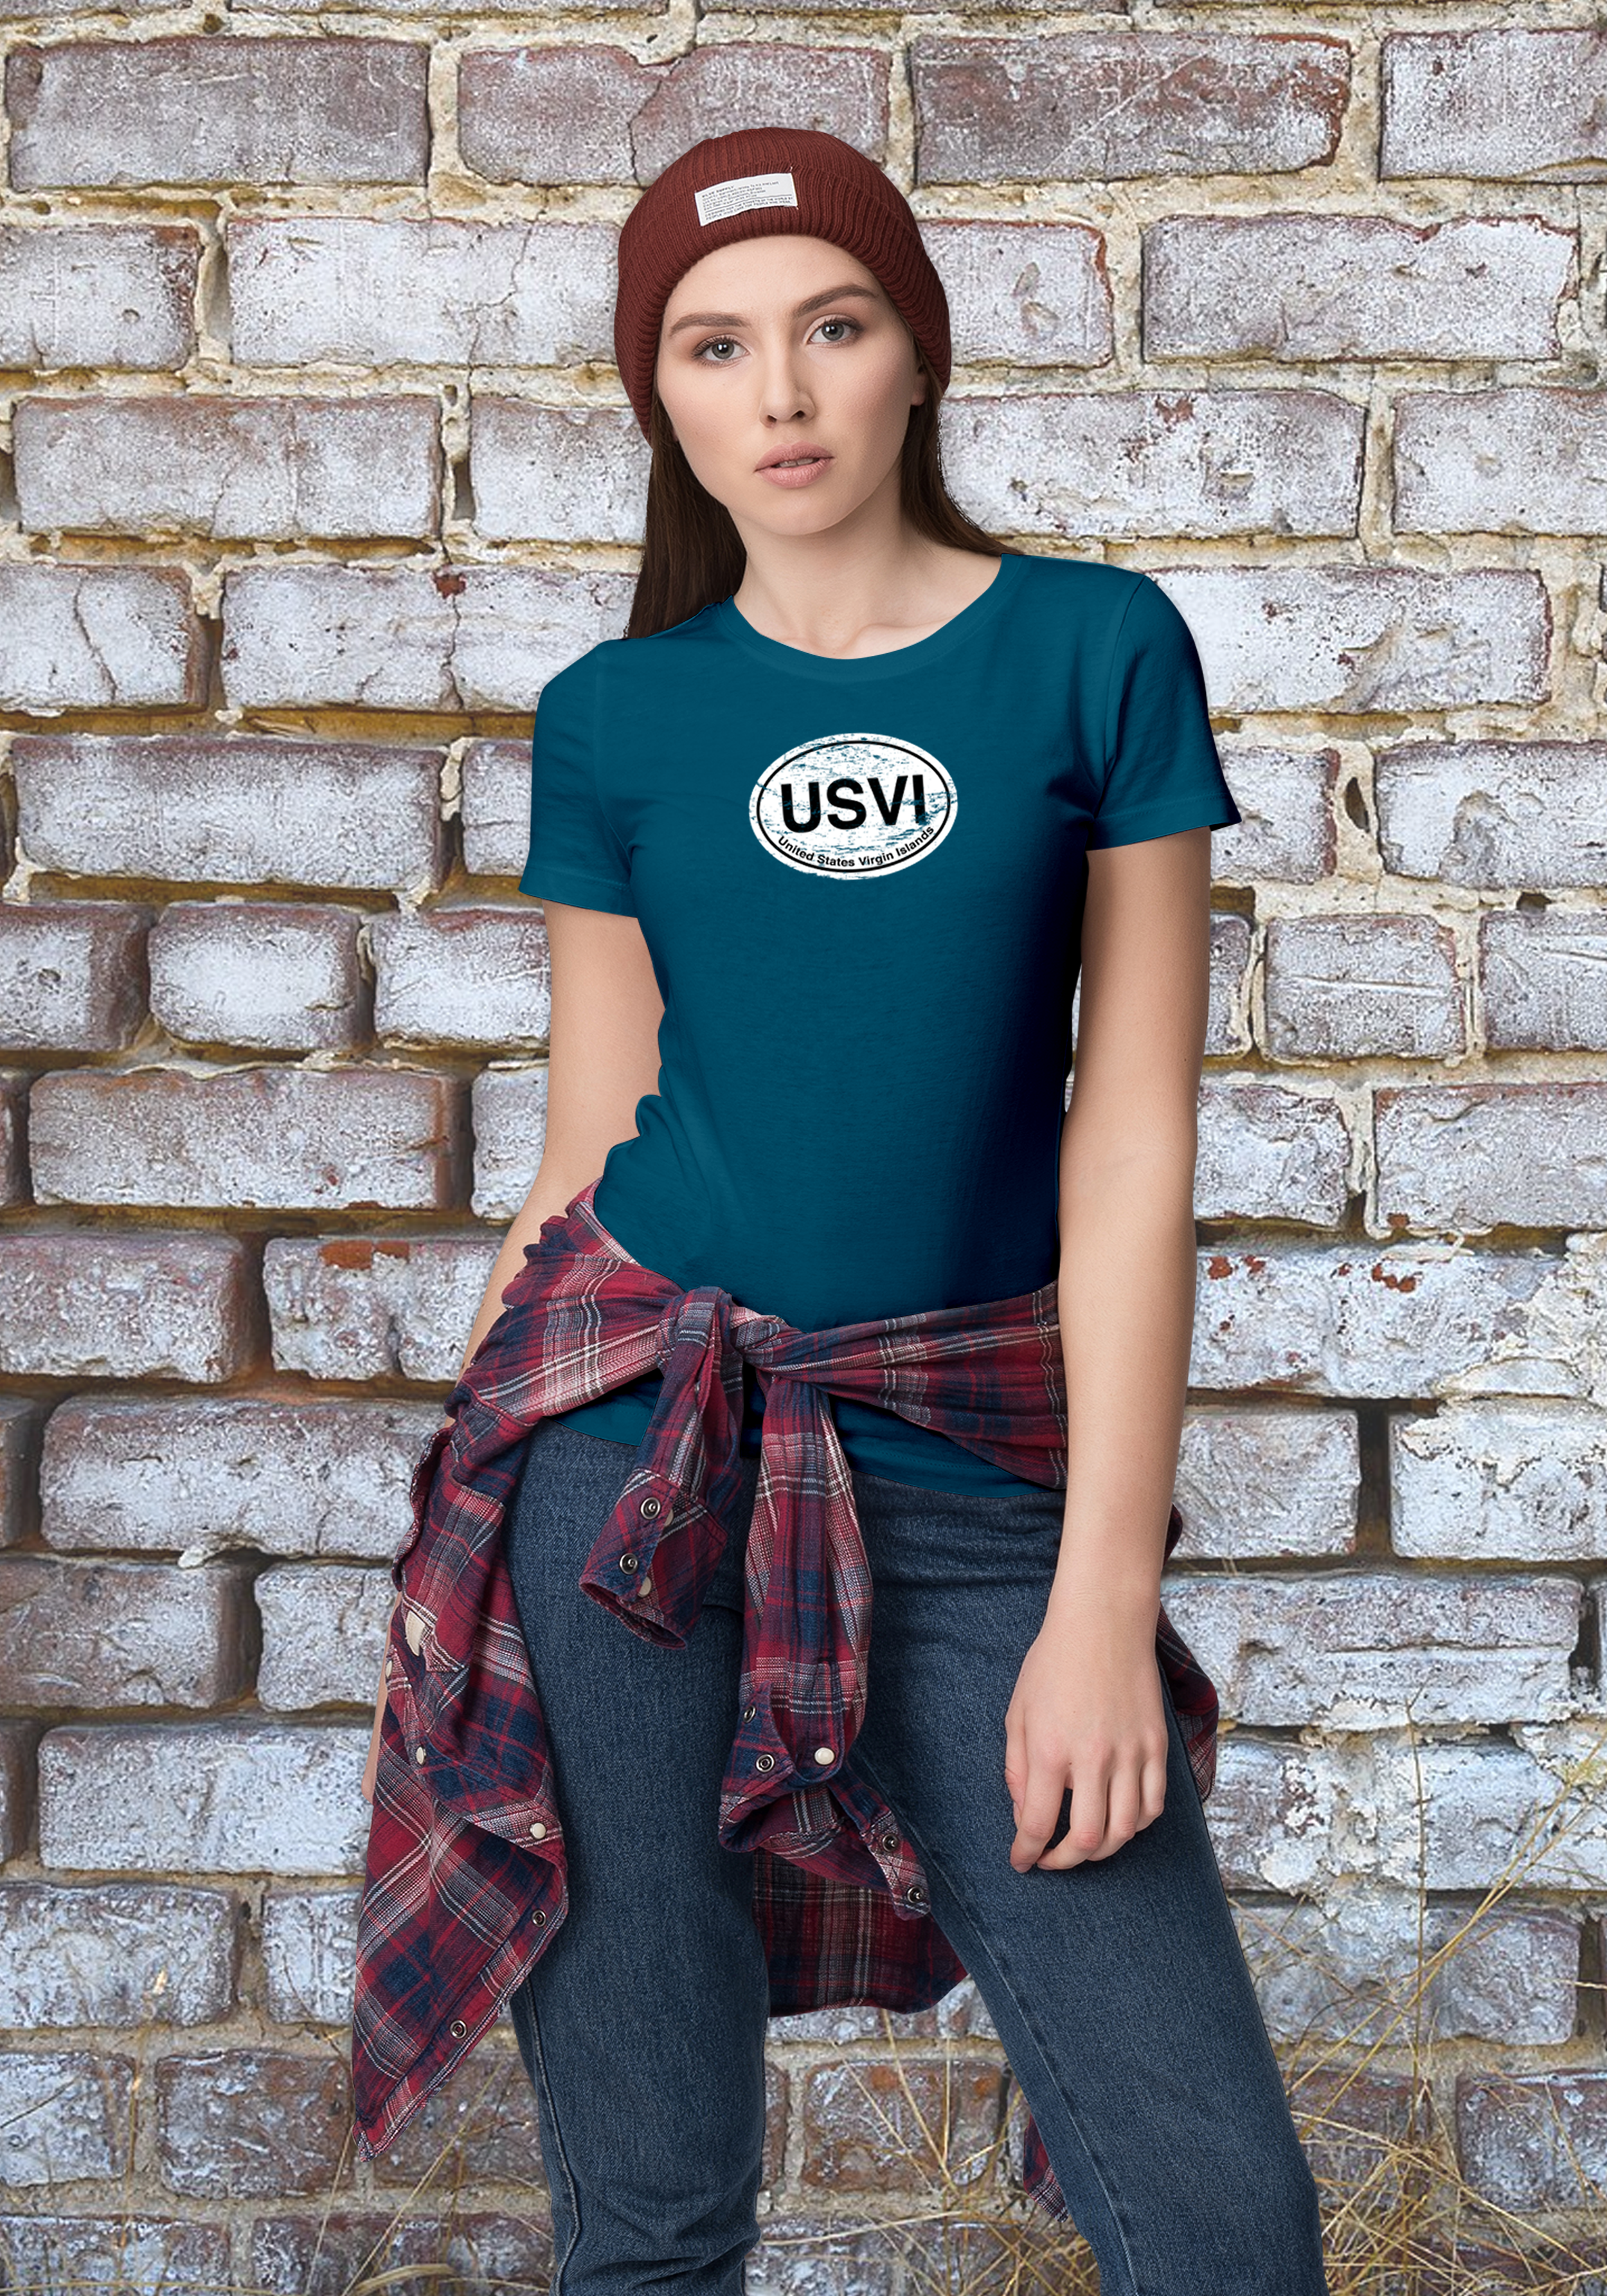 USVI Women's Classic T-Shirt Souvenirs - My Destination Location